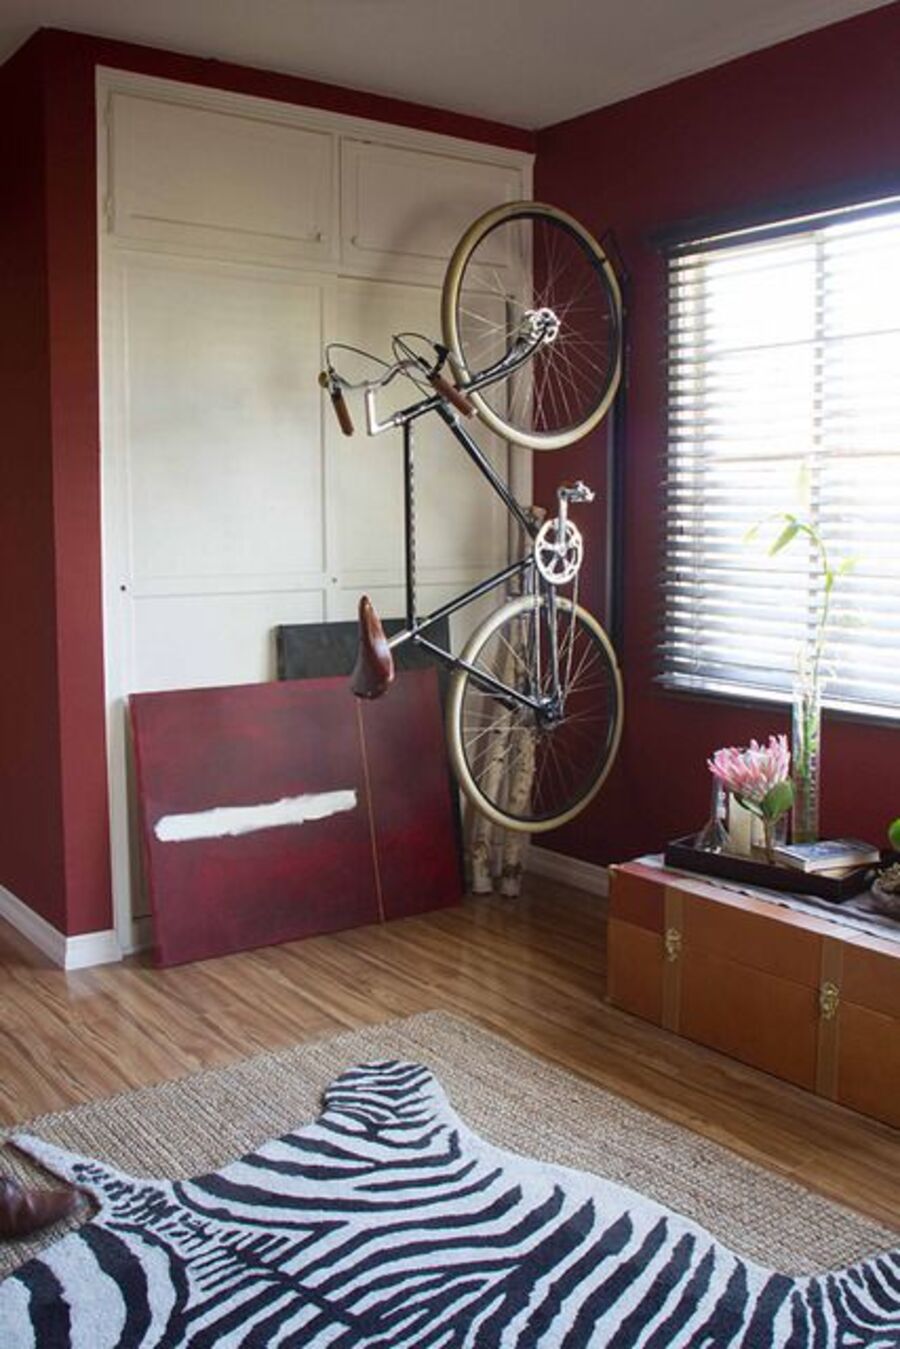 Rincón de una habitación con paredes burdeos, closet blanco empotrado, piso de madera, ventana con persianas y una bicicleta colgando verticalmente desde el espacio entre la ventana y el closet.